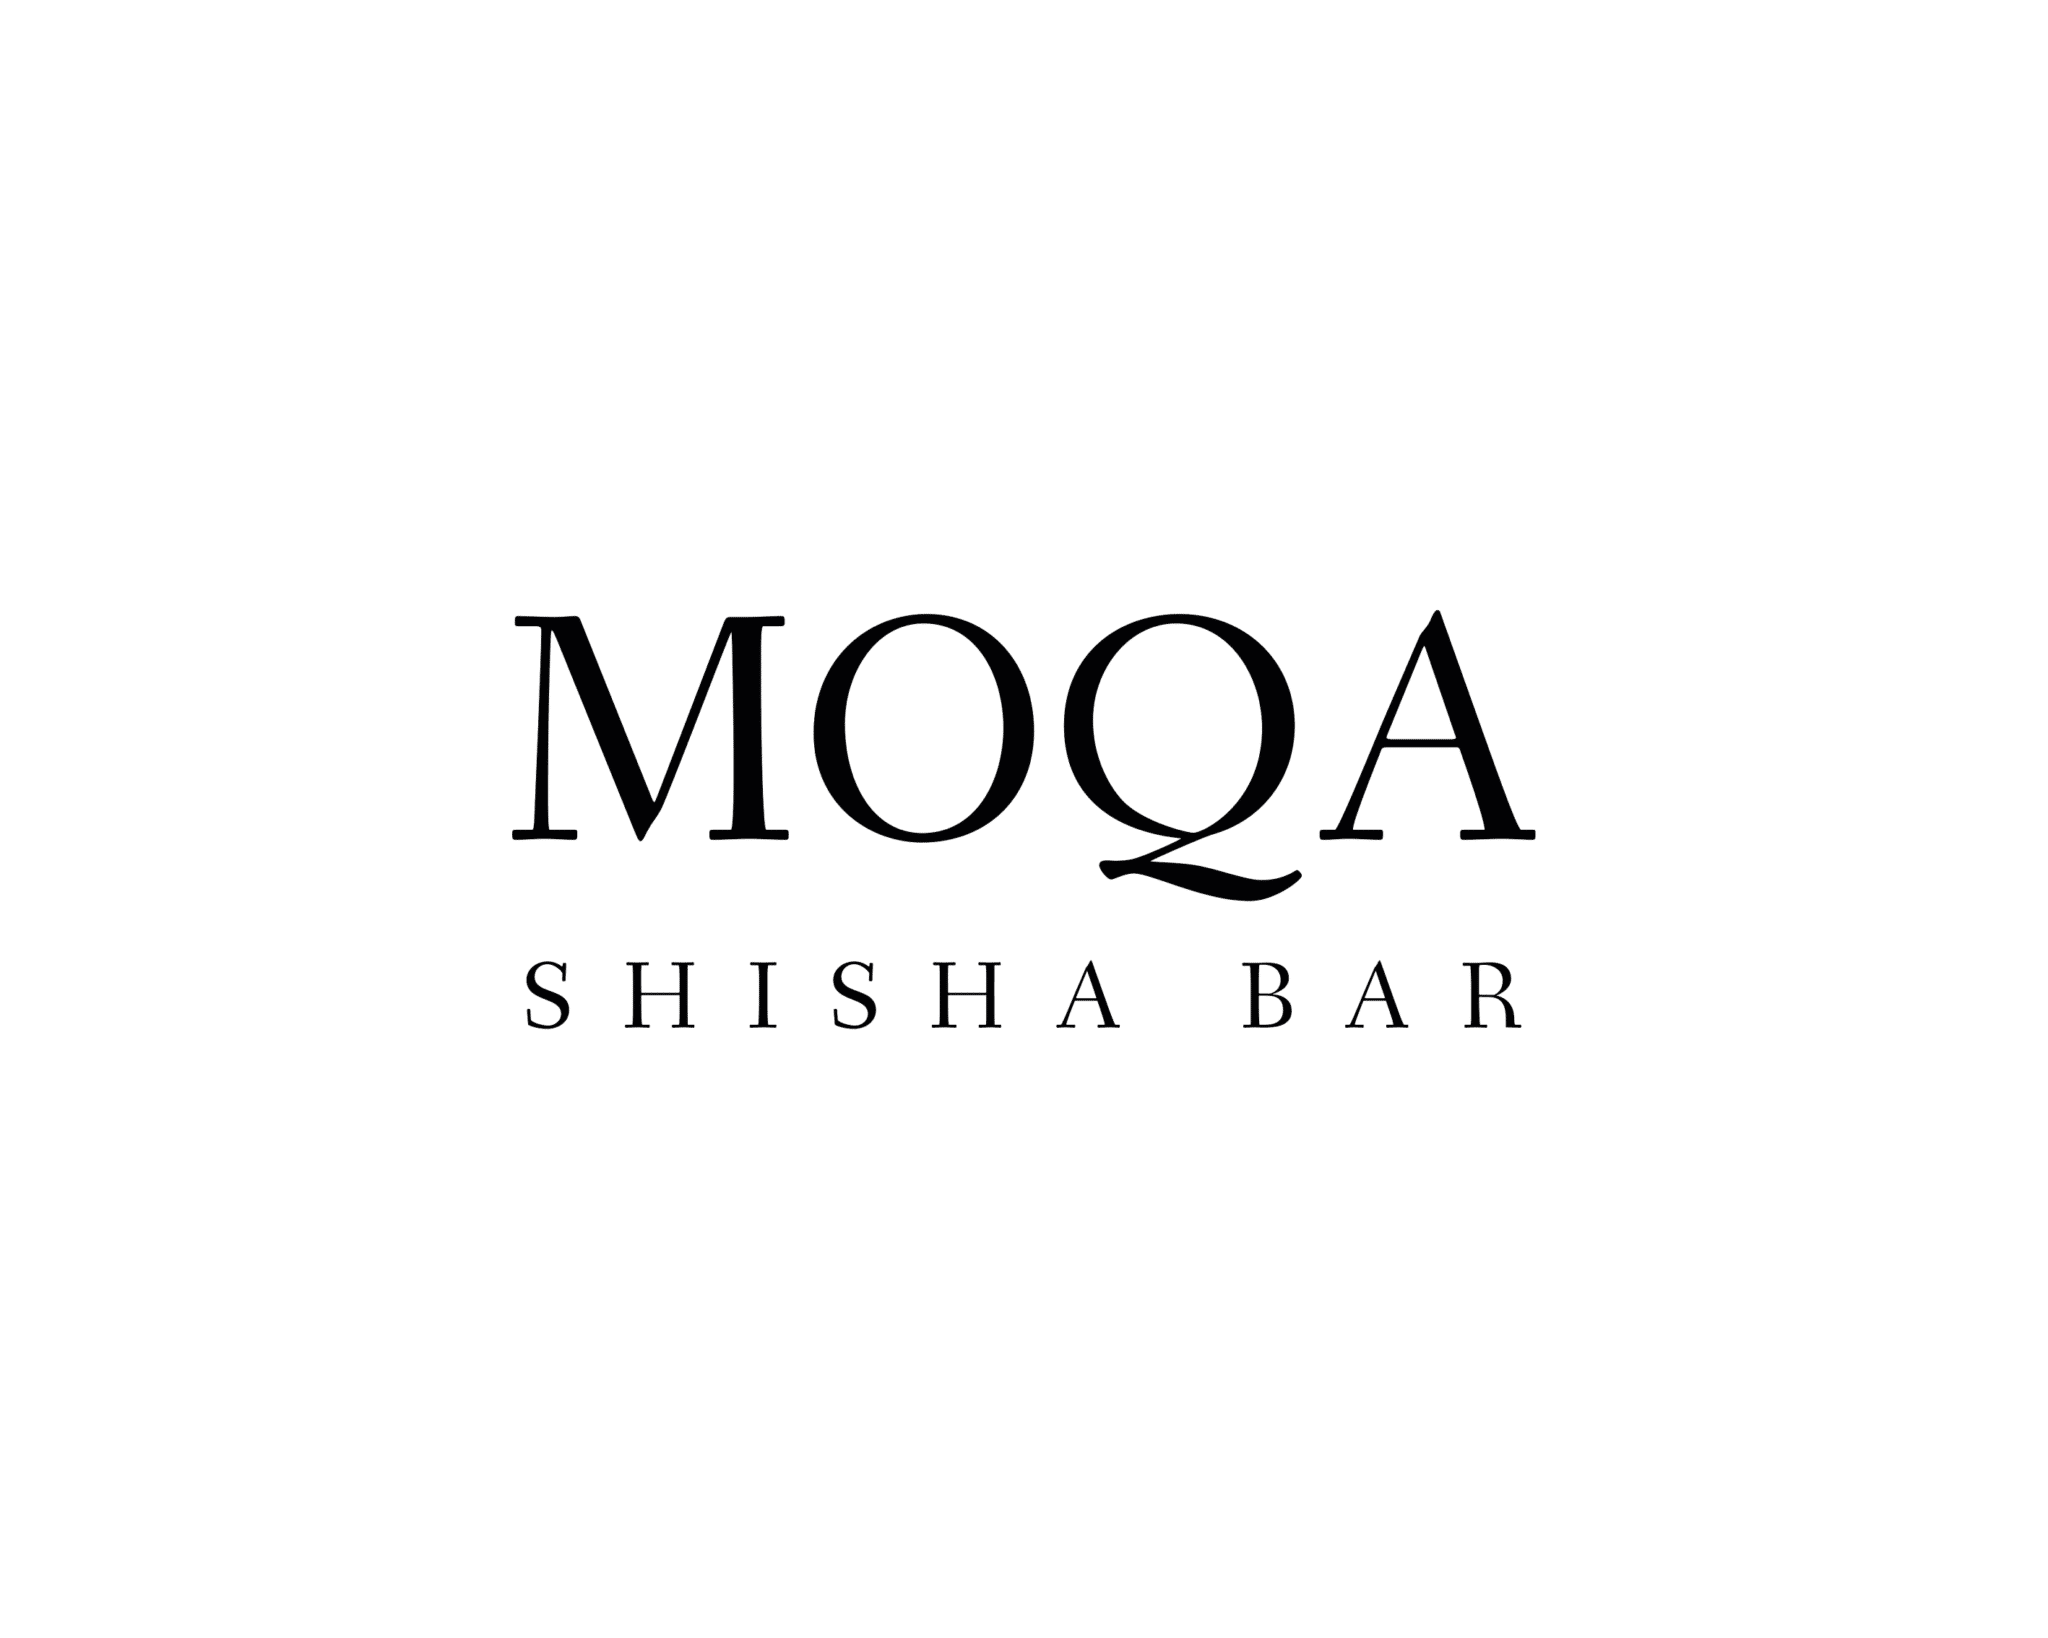 Moqa Shisha